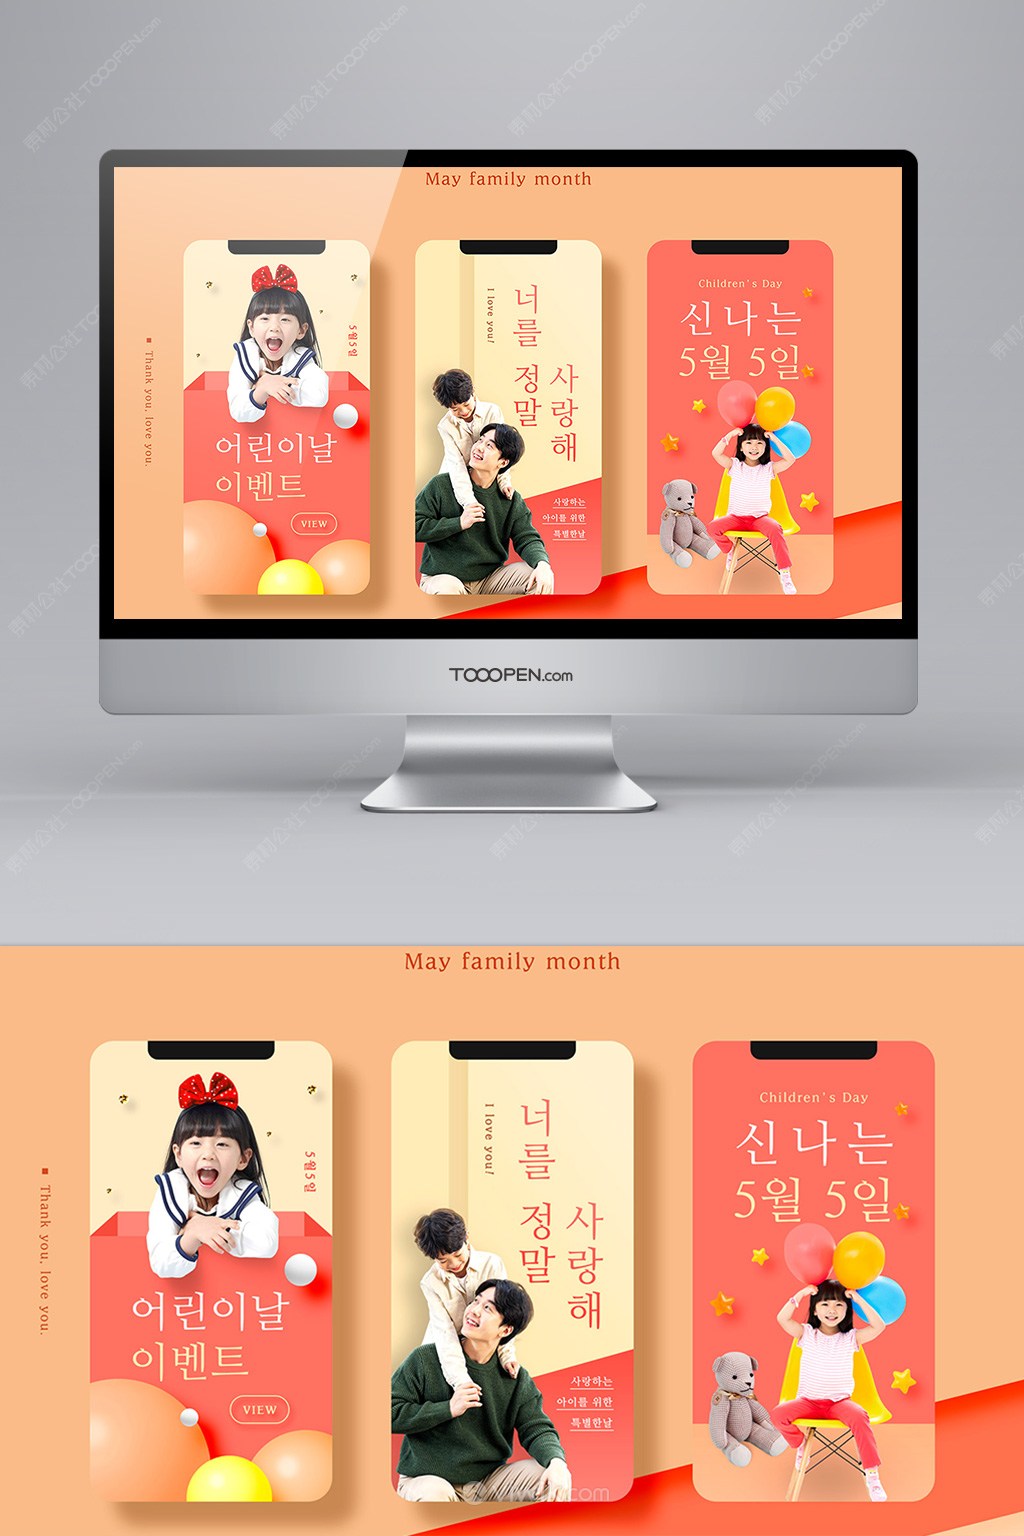 橙色背景色调感恩节app移动端亲子广告海报